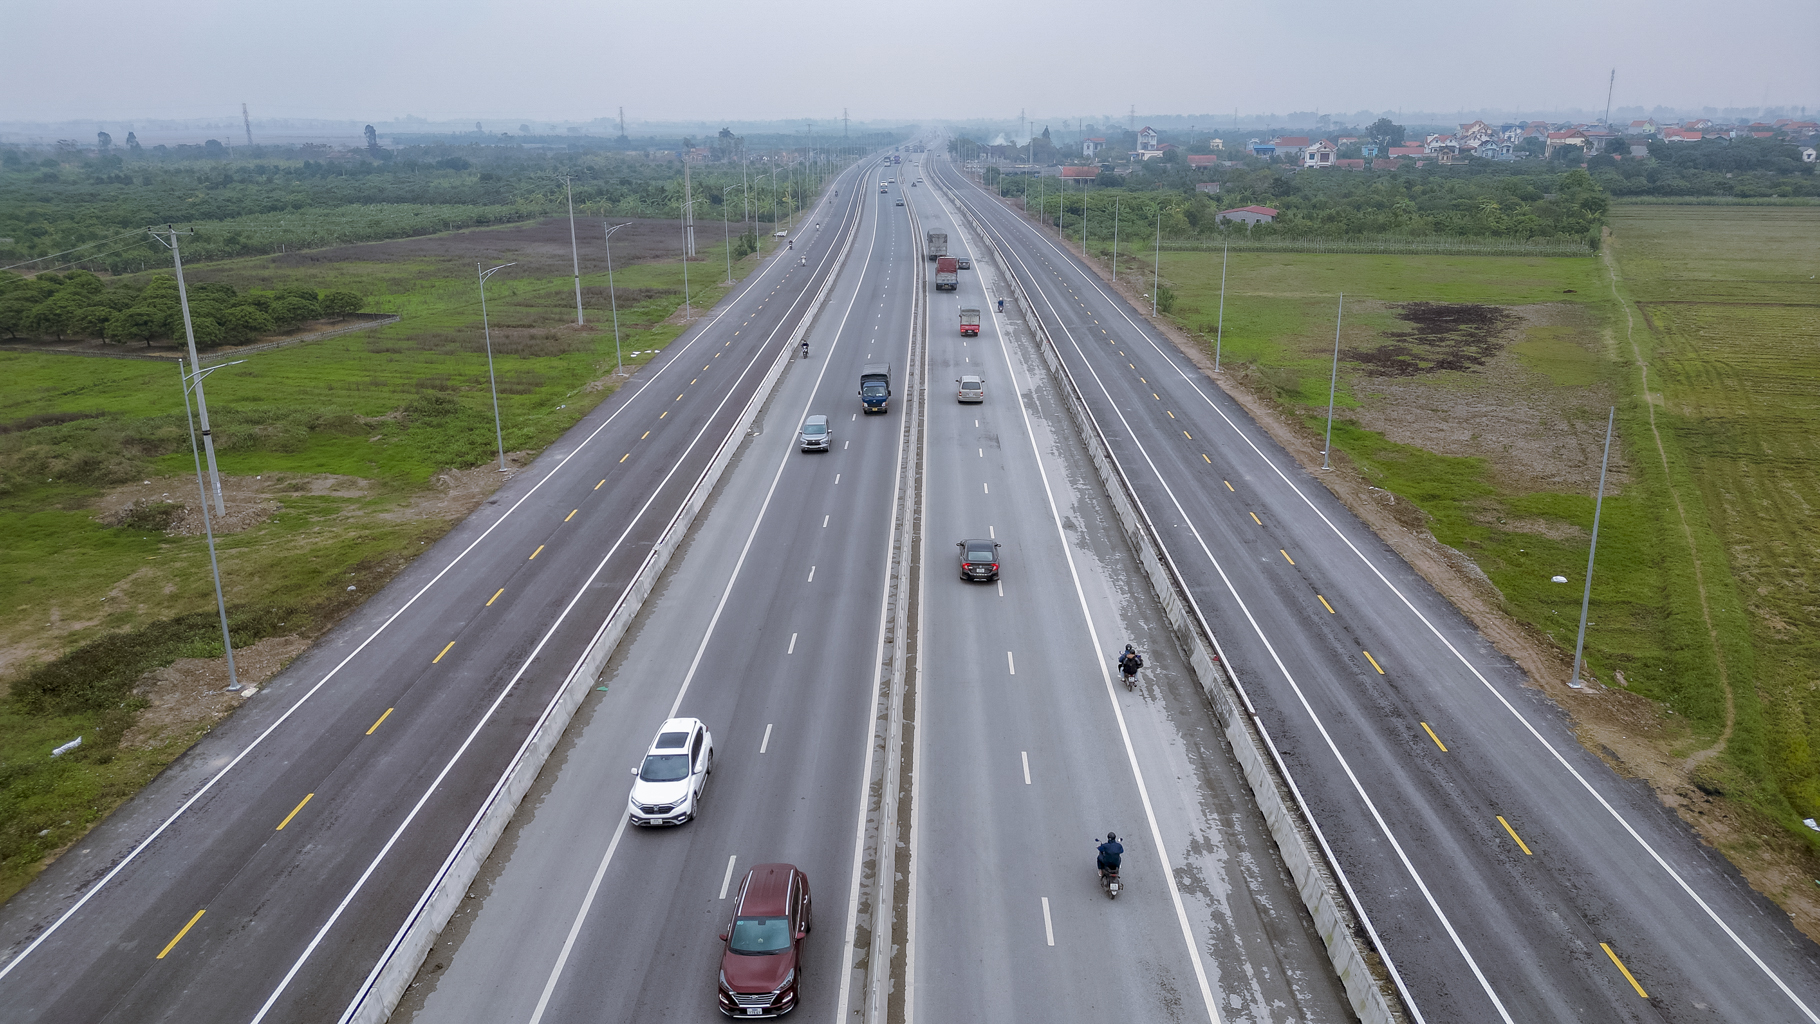 Toàn cảnh đường nối 2 cao tốc gần 2,5 tỷ USD sắp hoàn thành, đi qua 2 tỉnh siêu nhỏ dự kiến lên thành phố trực thuộc Trung ương- Ảnh 4.